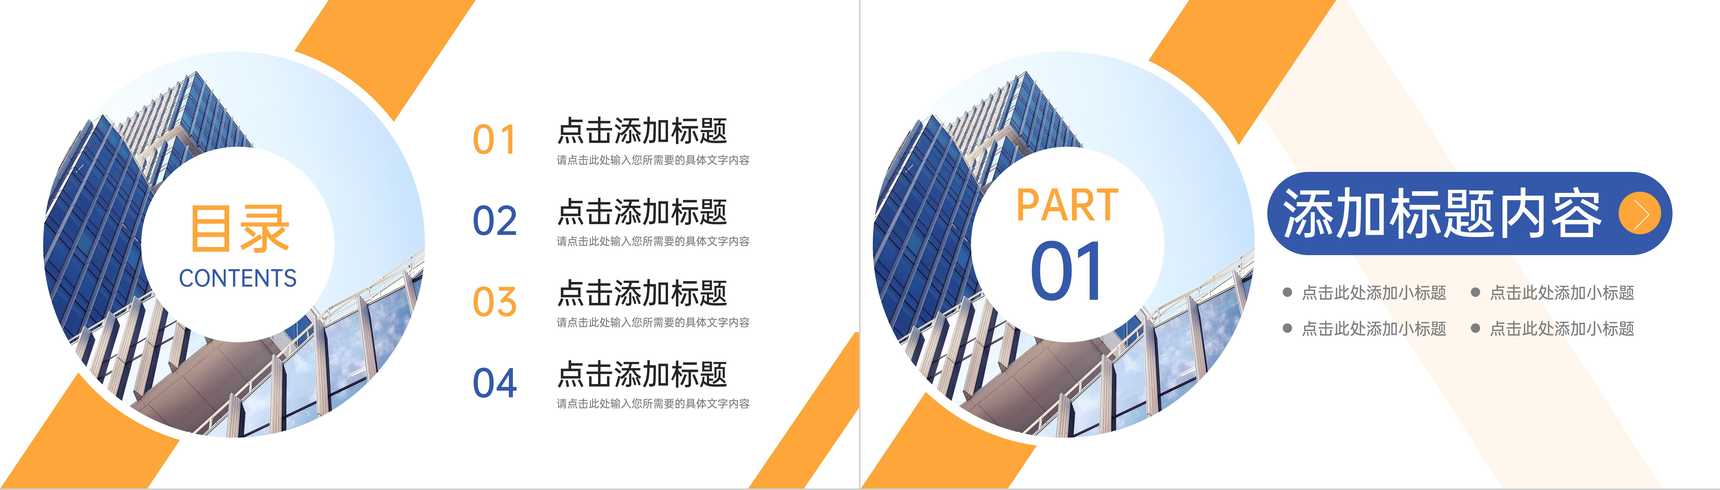 蓝黄撞色商务公司高效团队建设企业介绍PPT模板-2